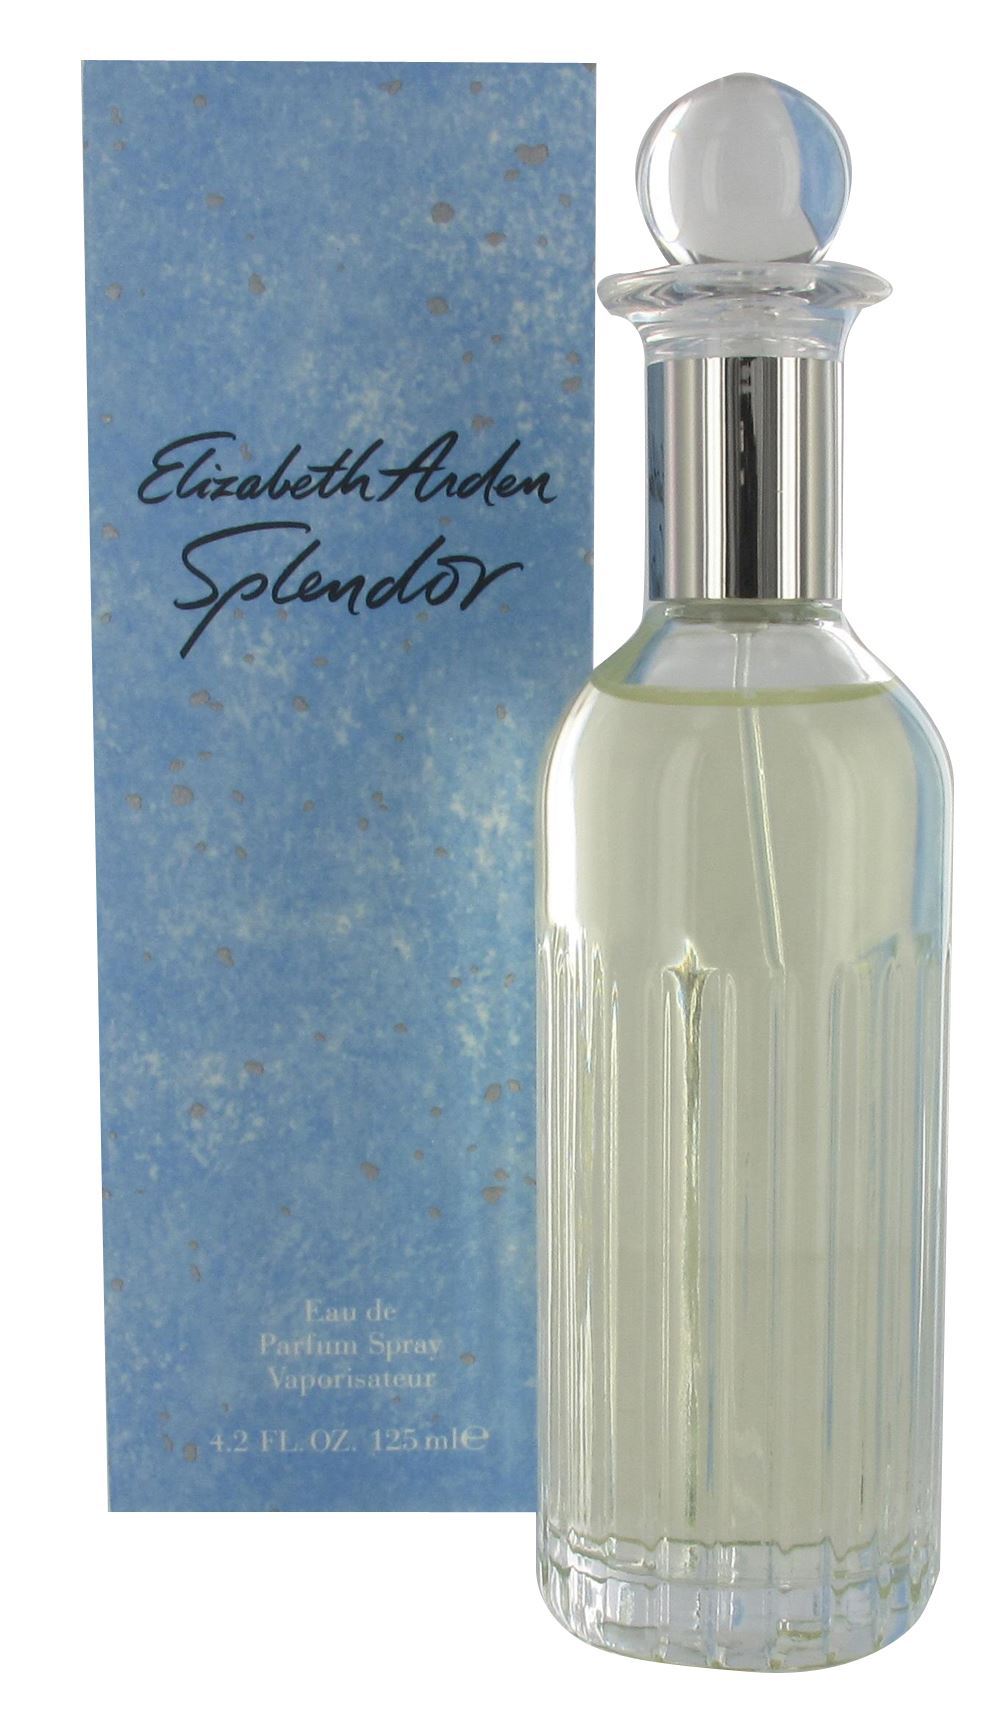 ELIZABETH ARDEN - Splendor para mujer / 125 ml Eau De Parfum Spray